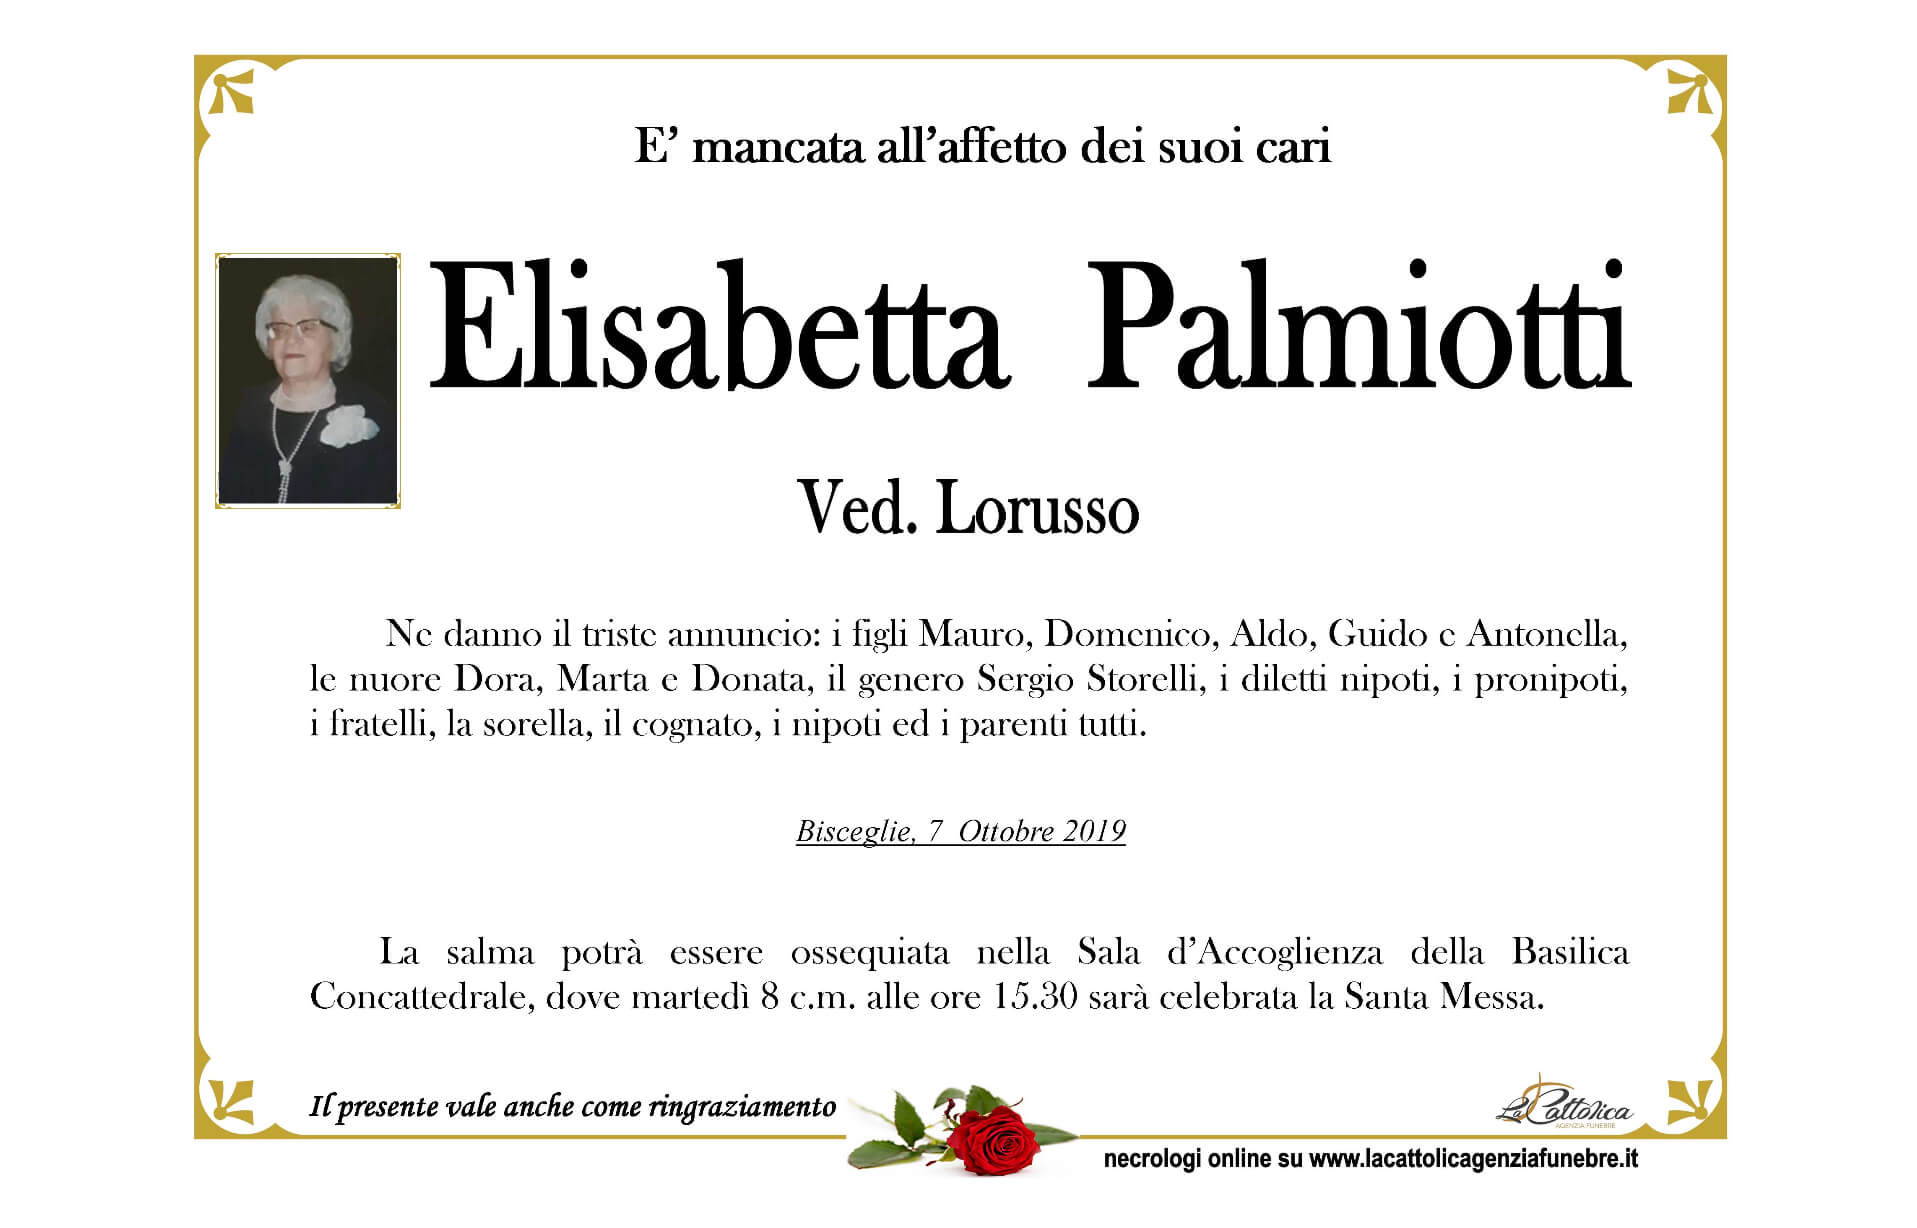 Elisabetta Palmiotti